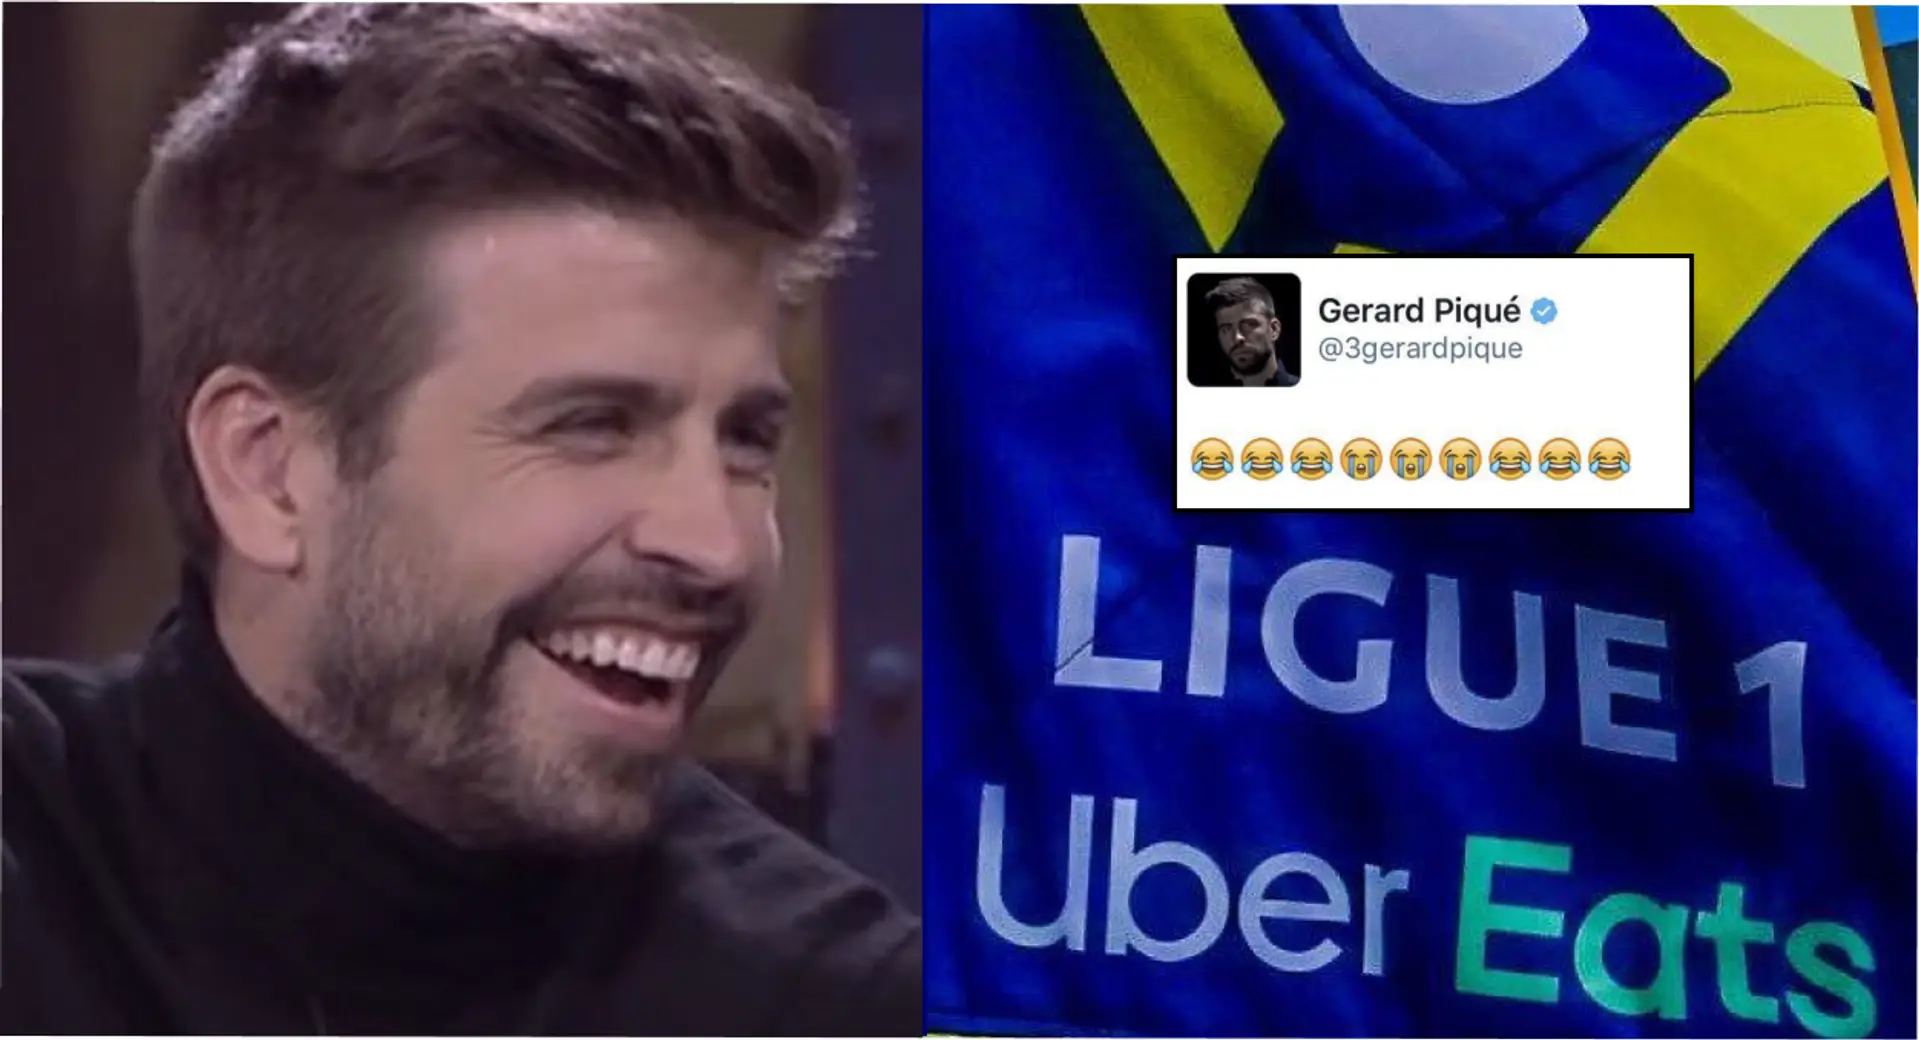 La Ligue 1 tente de se moquer de Gérard Piqué sur Twitter – et se fait humilier immédiatement